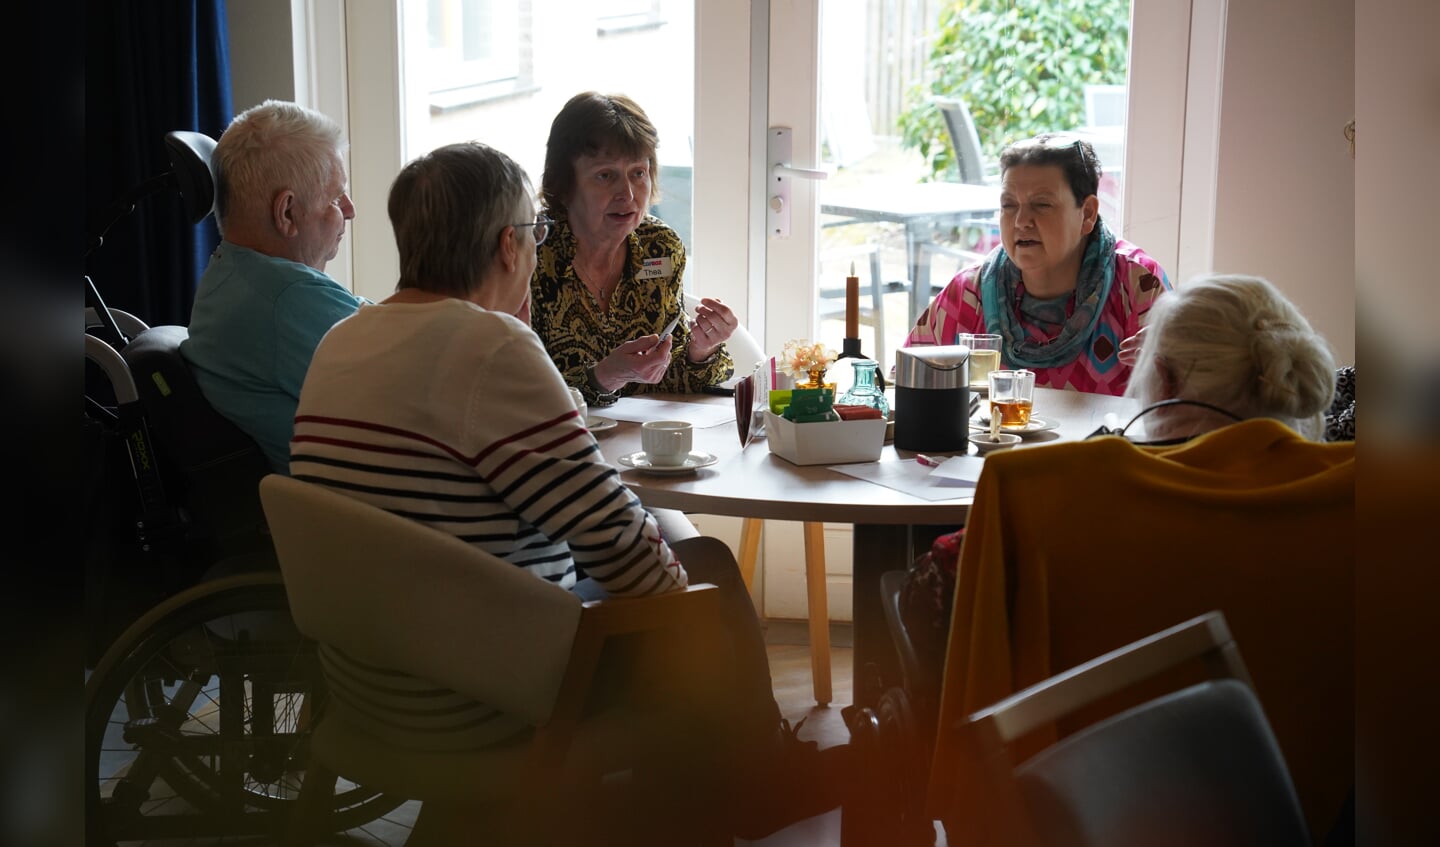 Thea Meinen in gesprek tijdens de boekenweekbijeenkomst. Foto: Frank Vinkenvleugel